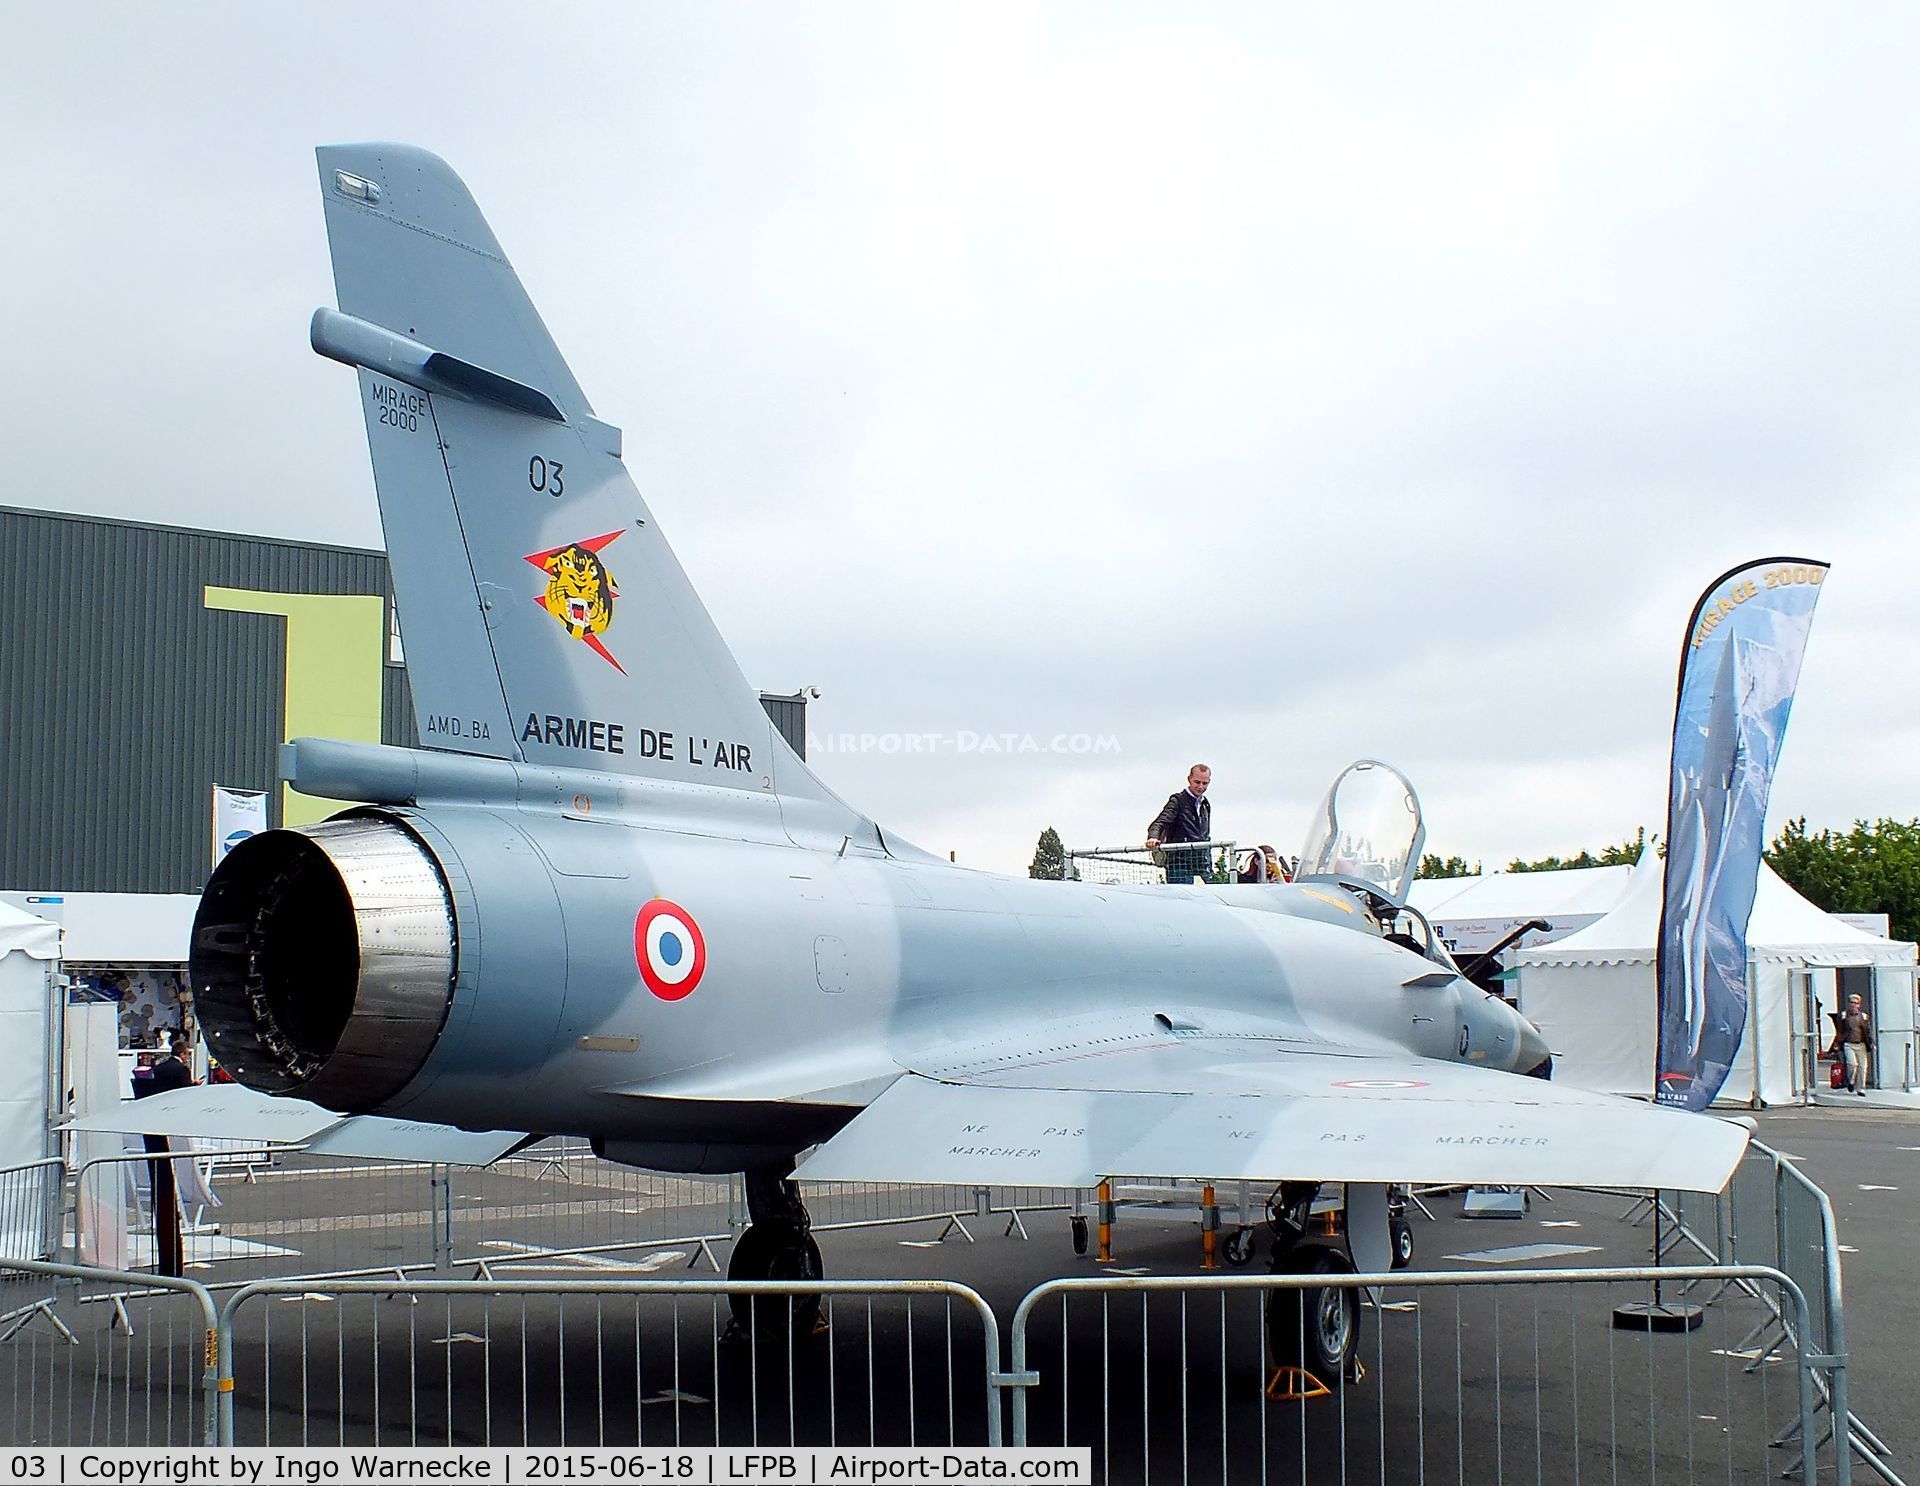 03, Dassault Mirage 2000C C/N 03, Dassault Mirage 2000C of the Armee de l'Air at the Aerosalon 2015, Paris